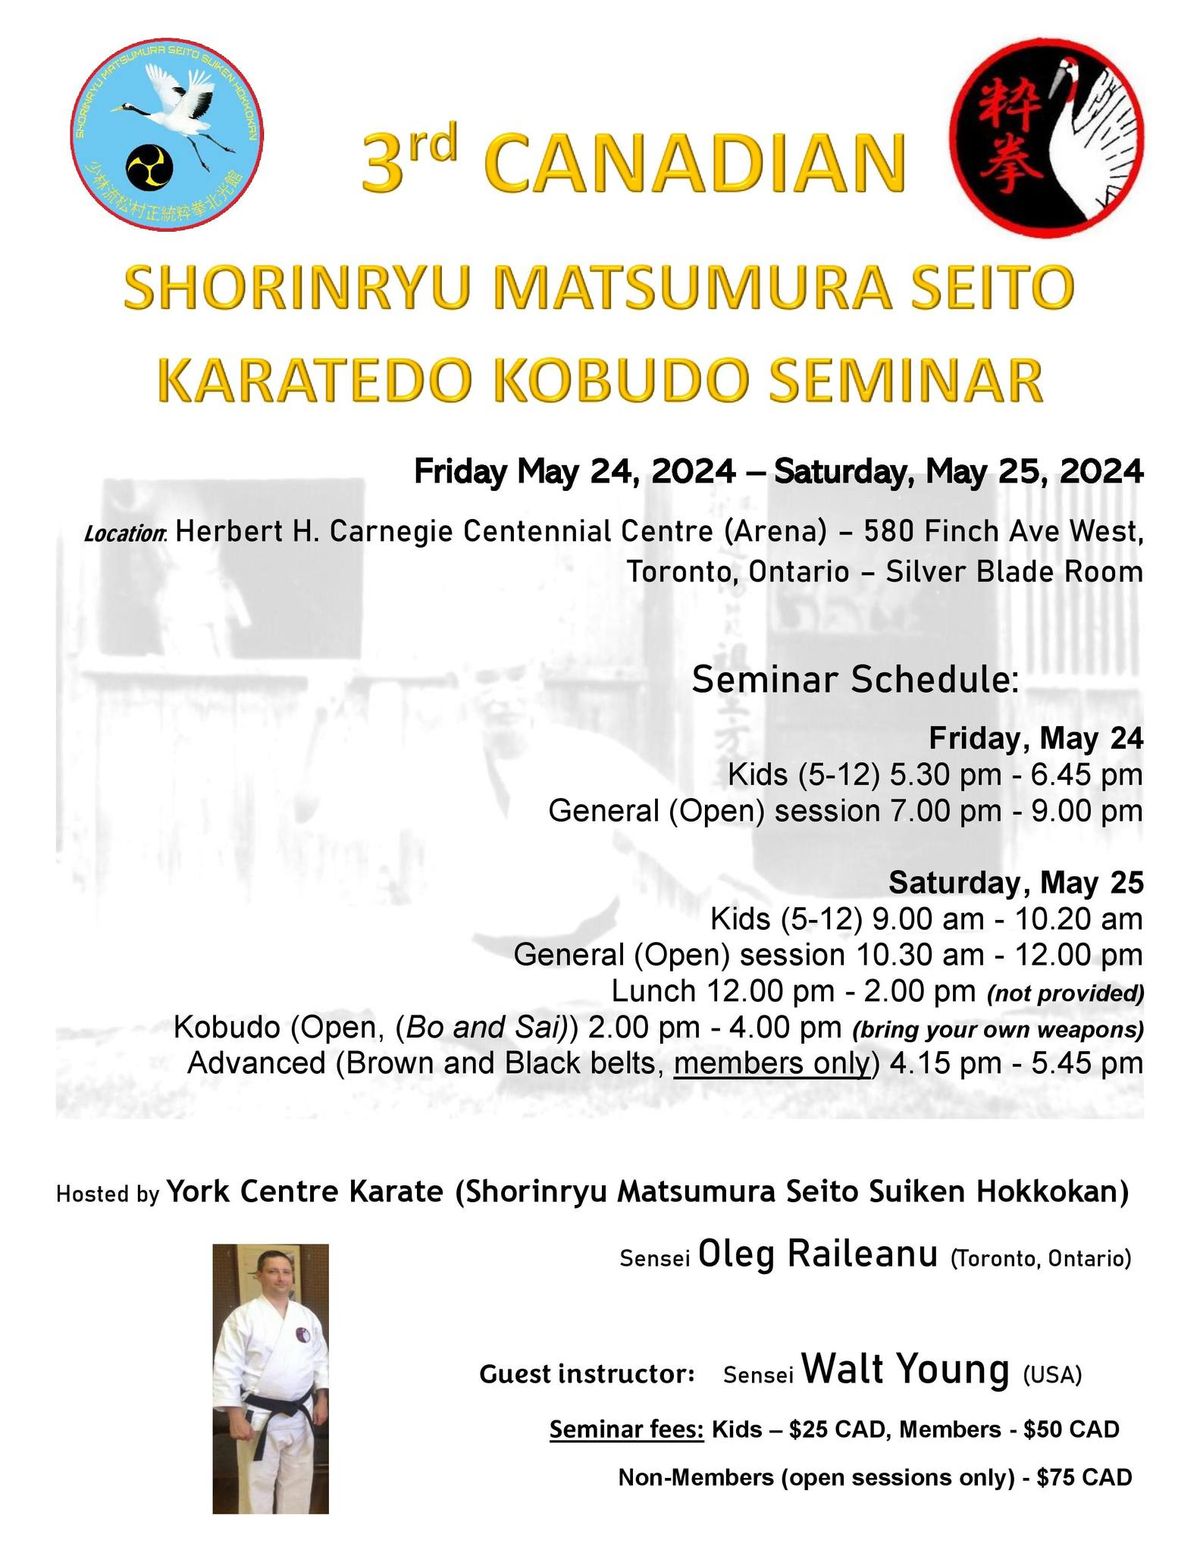 3rd Canadian Shorinryu Matsumura Seito Seminar